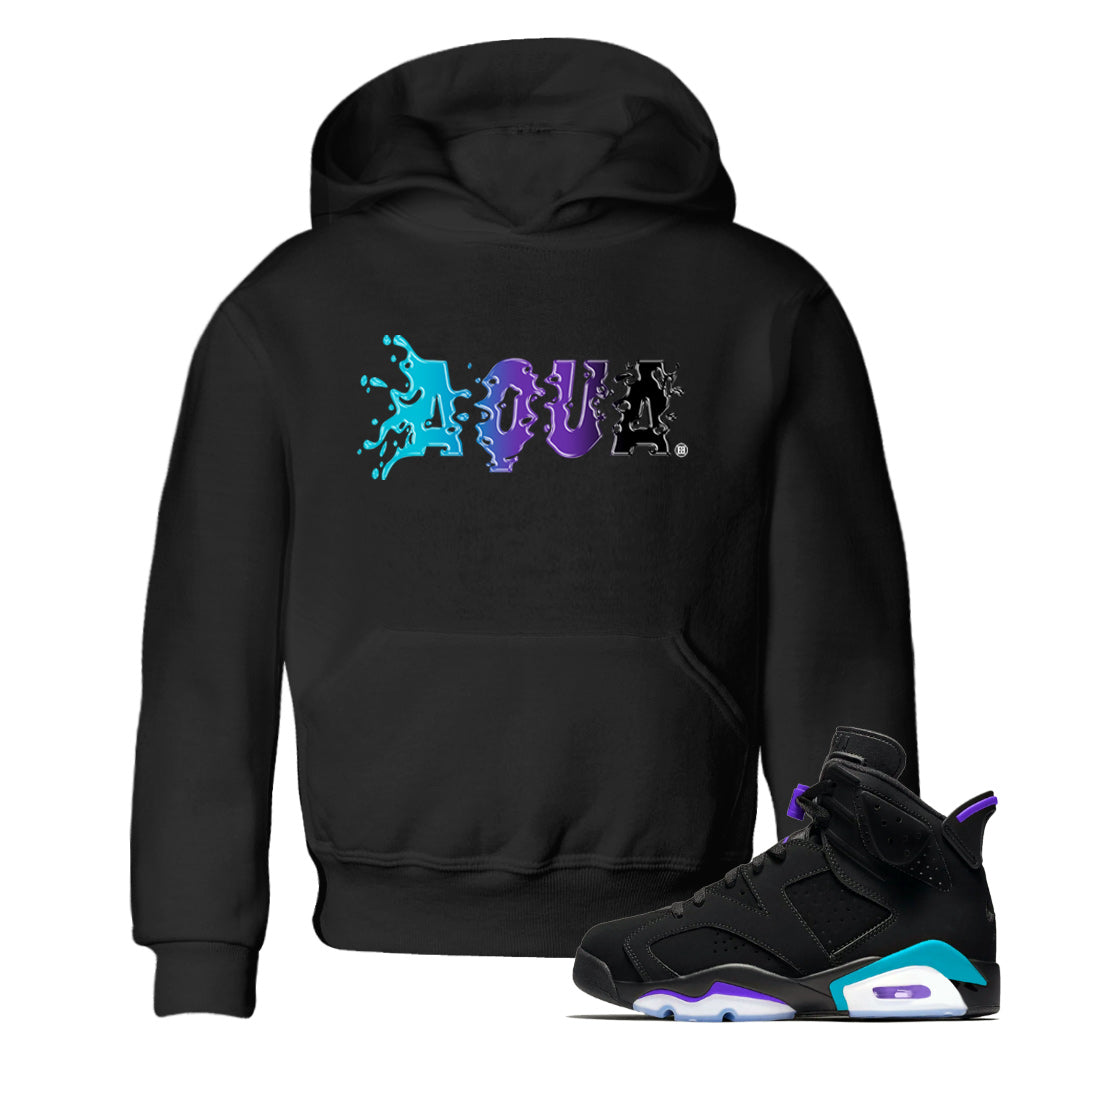 Air Jordan 6 Aqua Sneaker Match Tees Aqua Sneaker Tees AJ6 Aqua Sneaker Release T-Shirt Kids Shirts Black 1